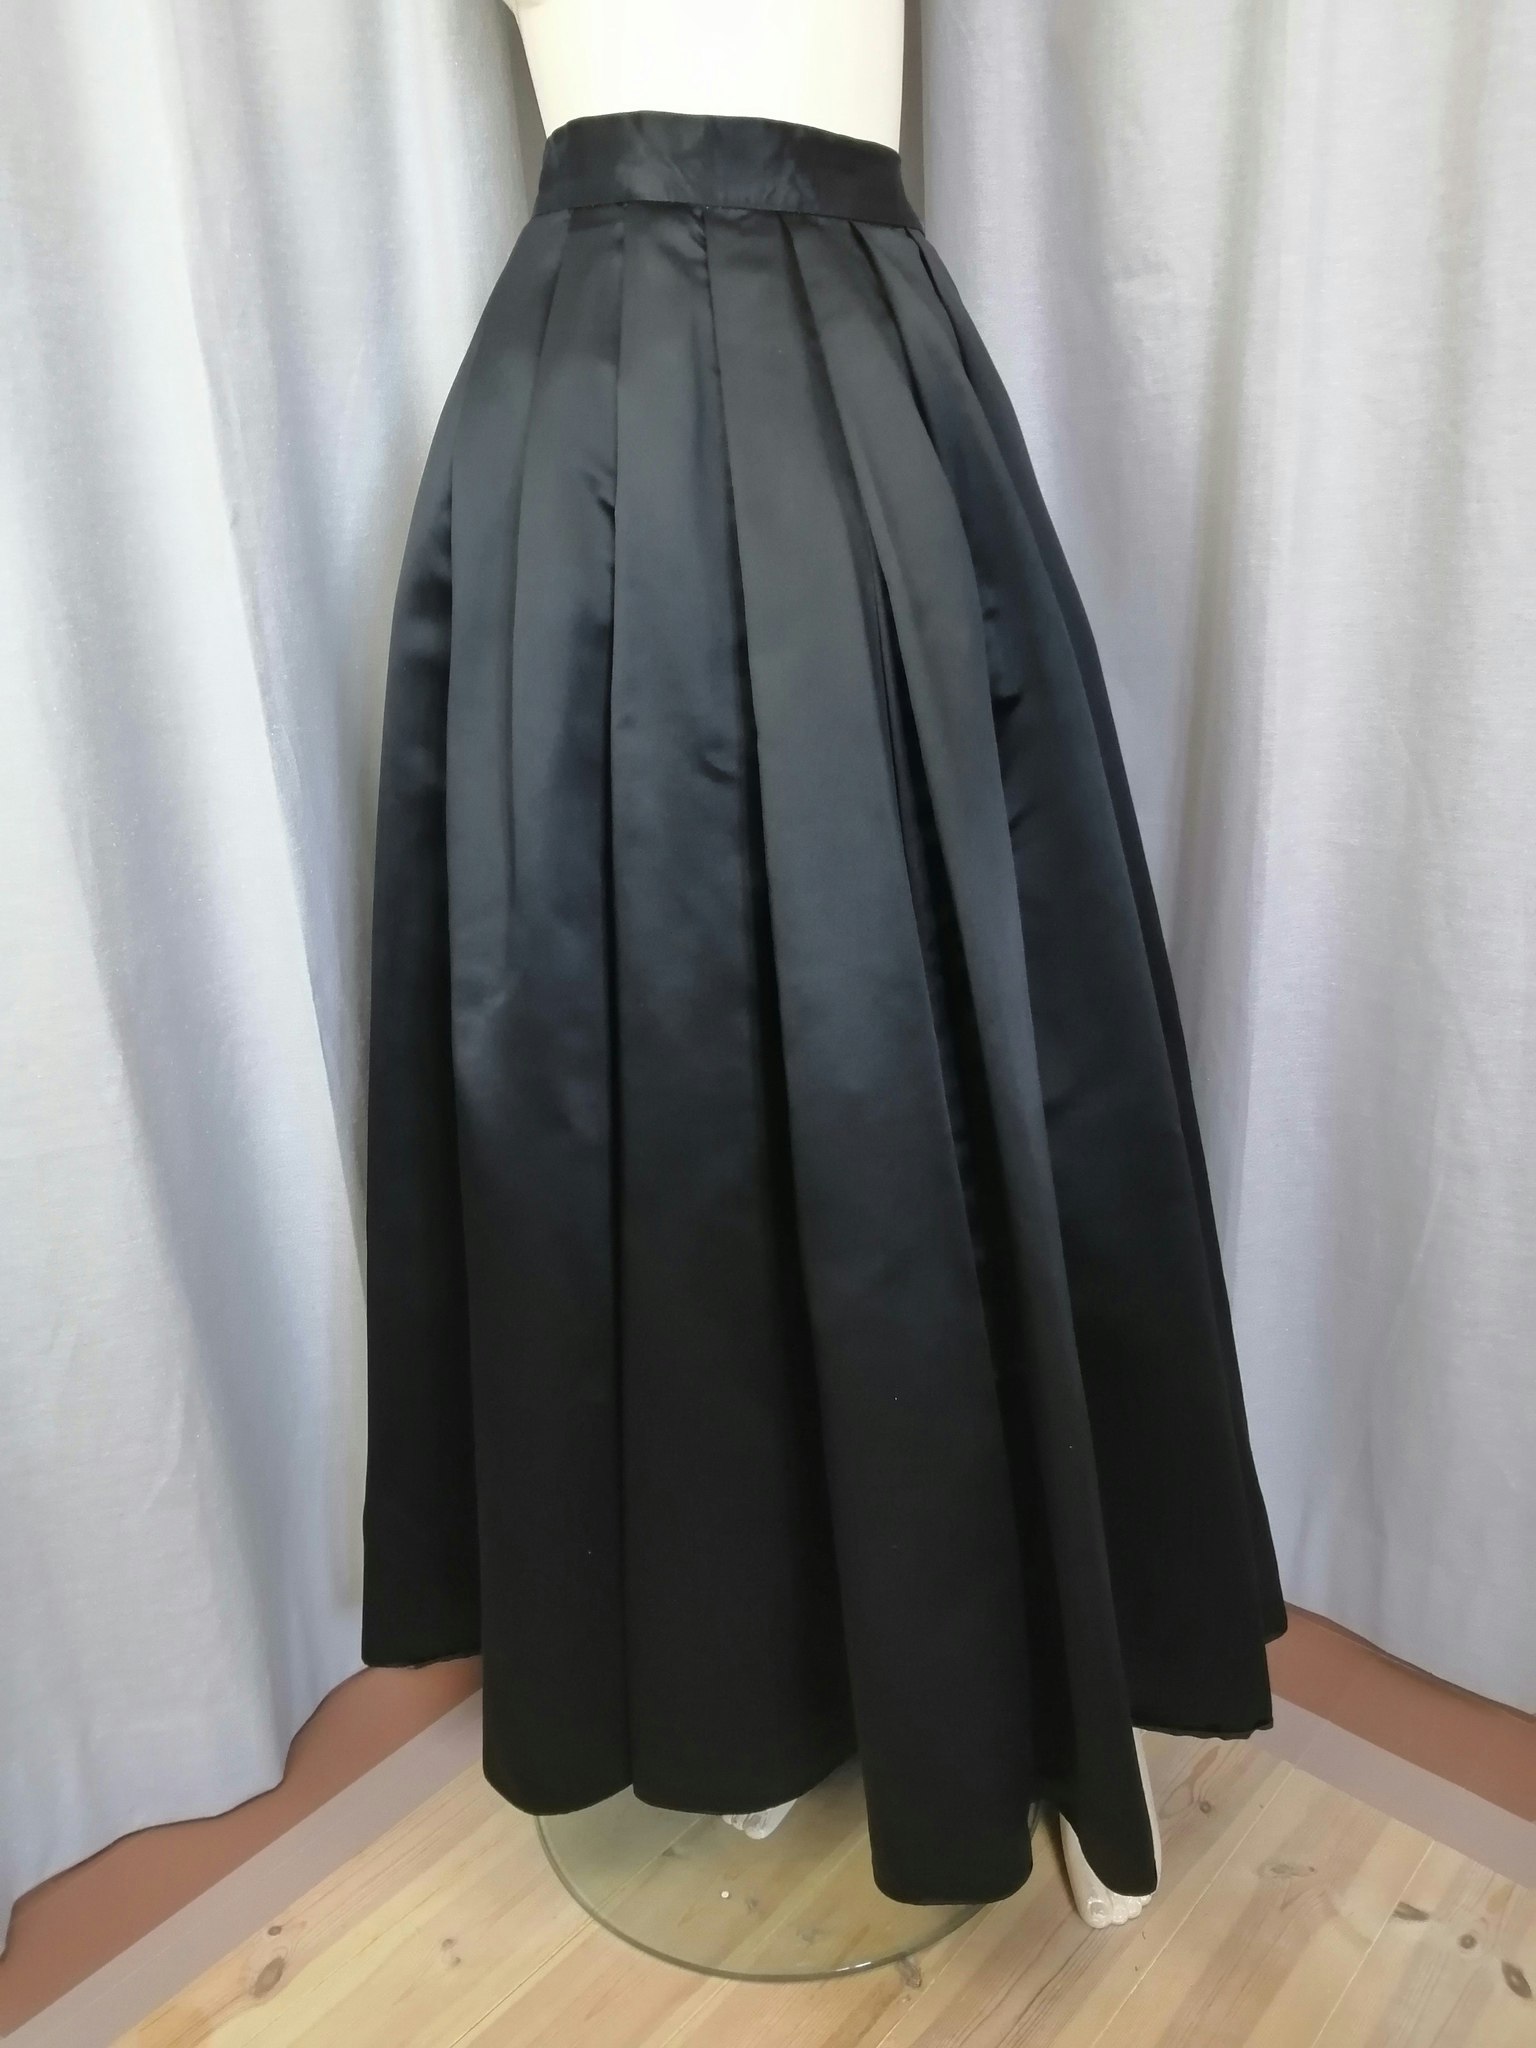 Vintage elegant långkjol, 3 lager inkl 2 underkjolar extra vidd svart  4050-tal - Vintage Corner Österlen